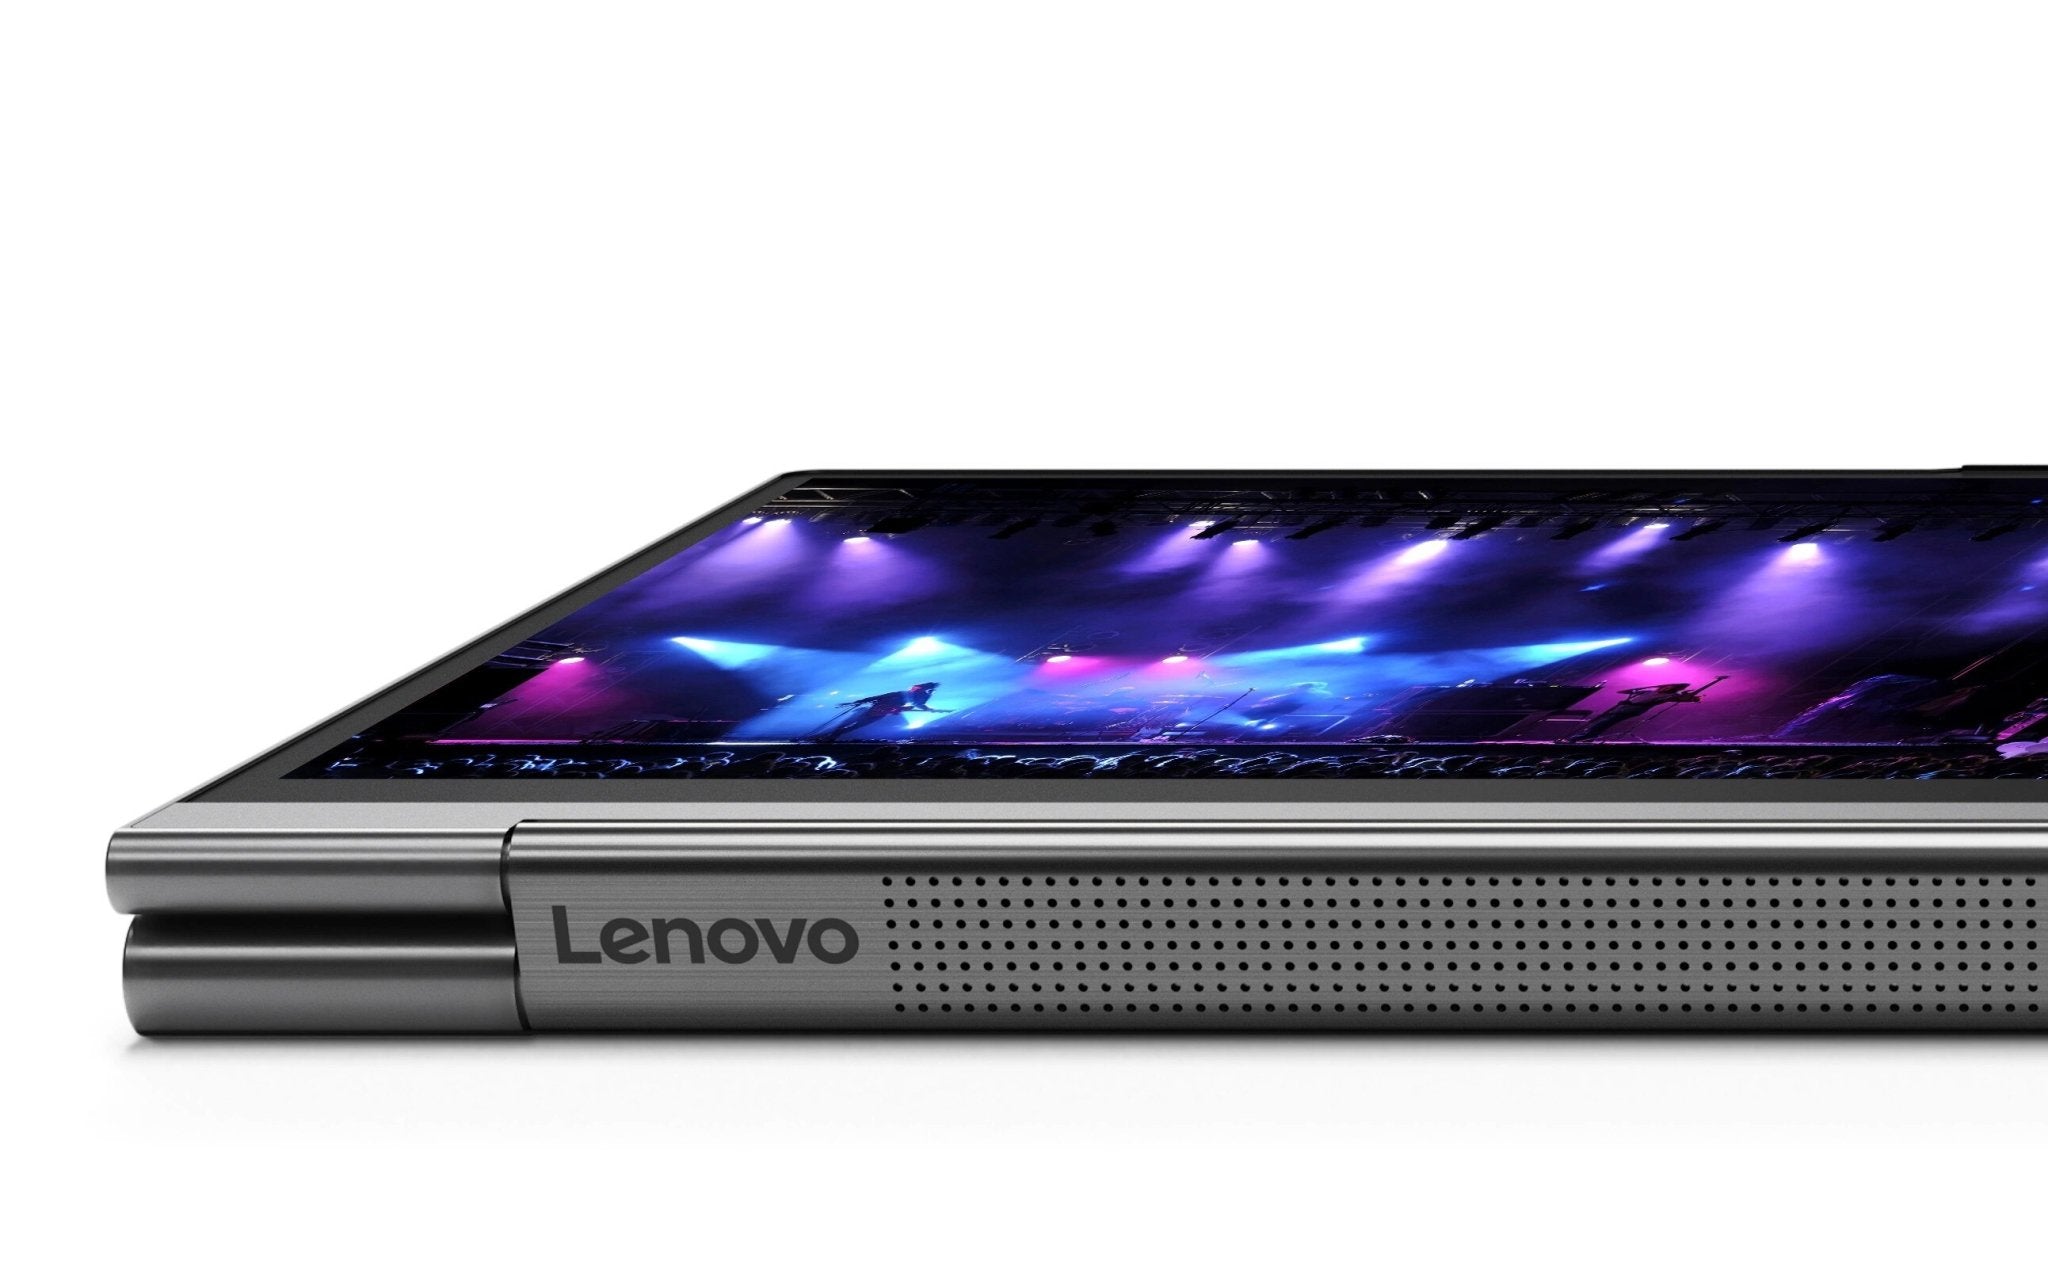 High-end Lenovo Yoga C940 Laptop with 10th Gen Intel i7/i5 Processor 16GB Ram 1TB SSD 4K 3840x2160 Touch Screen ThunderBolt 3.0 GreatEagleInc